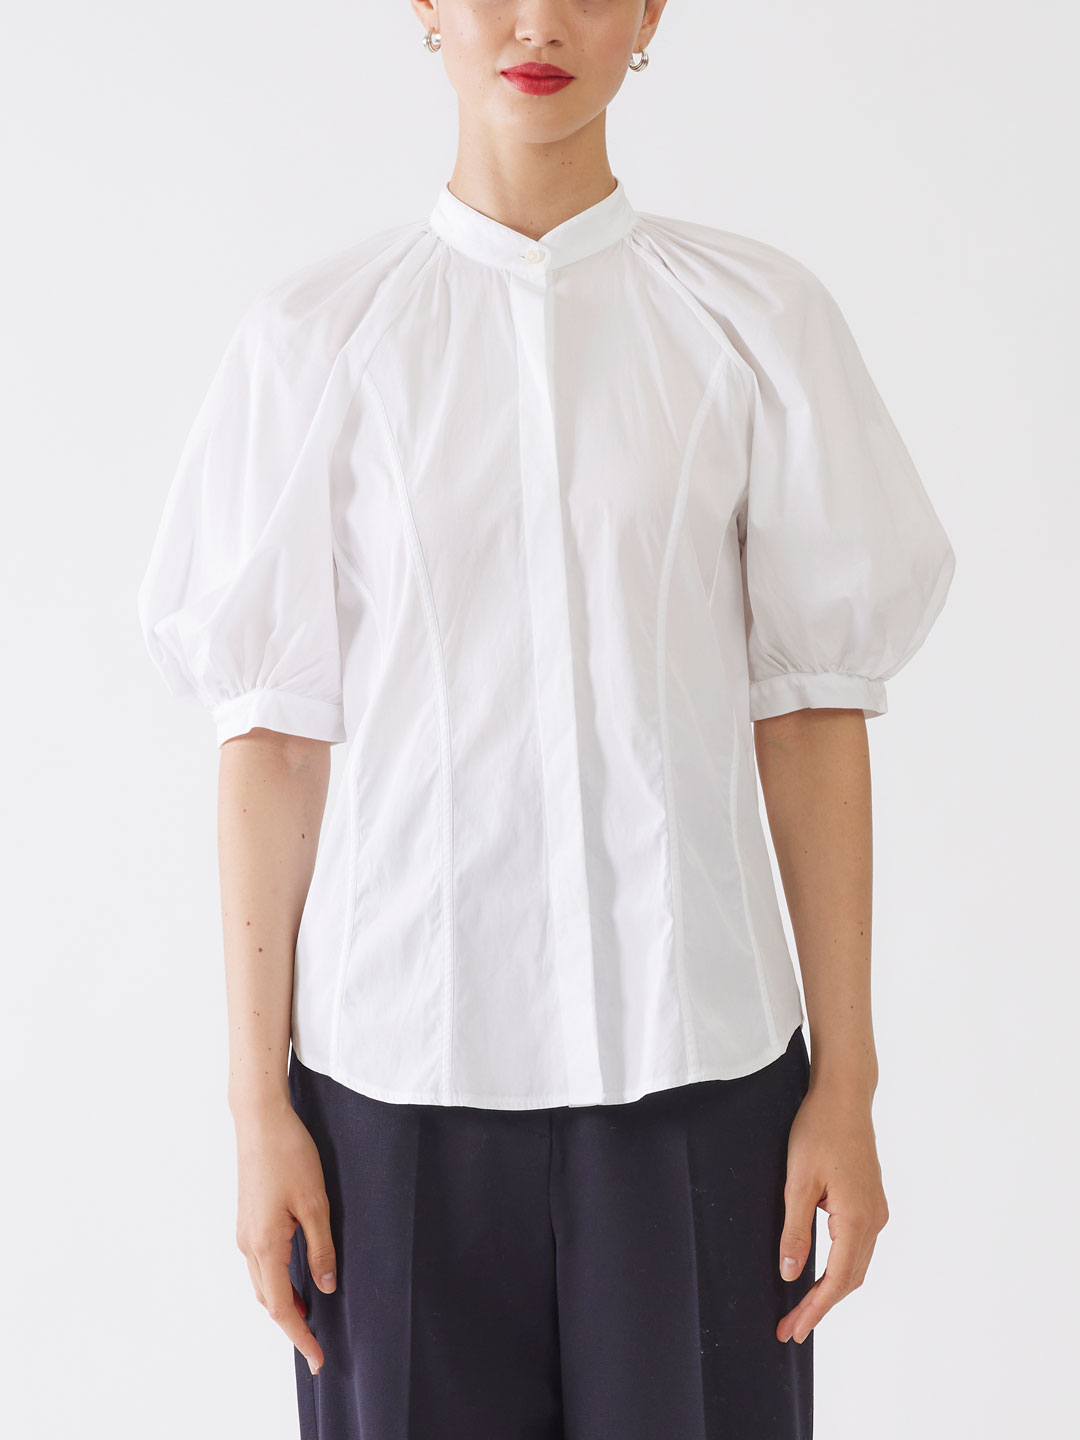 DULCINEE Puff Sleeves Shirt - White